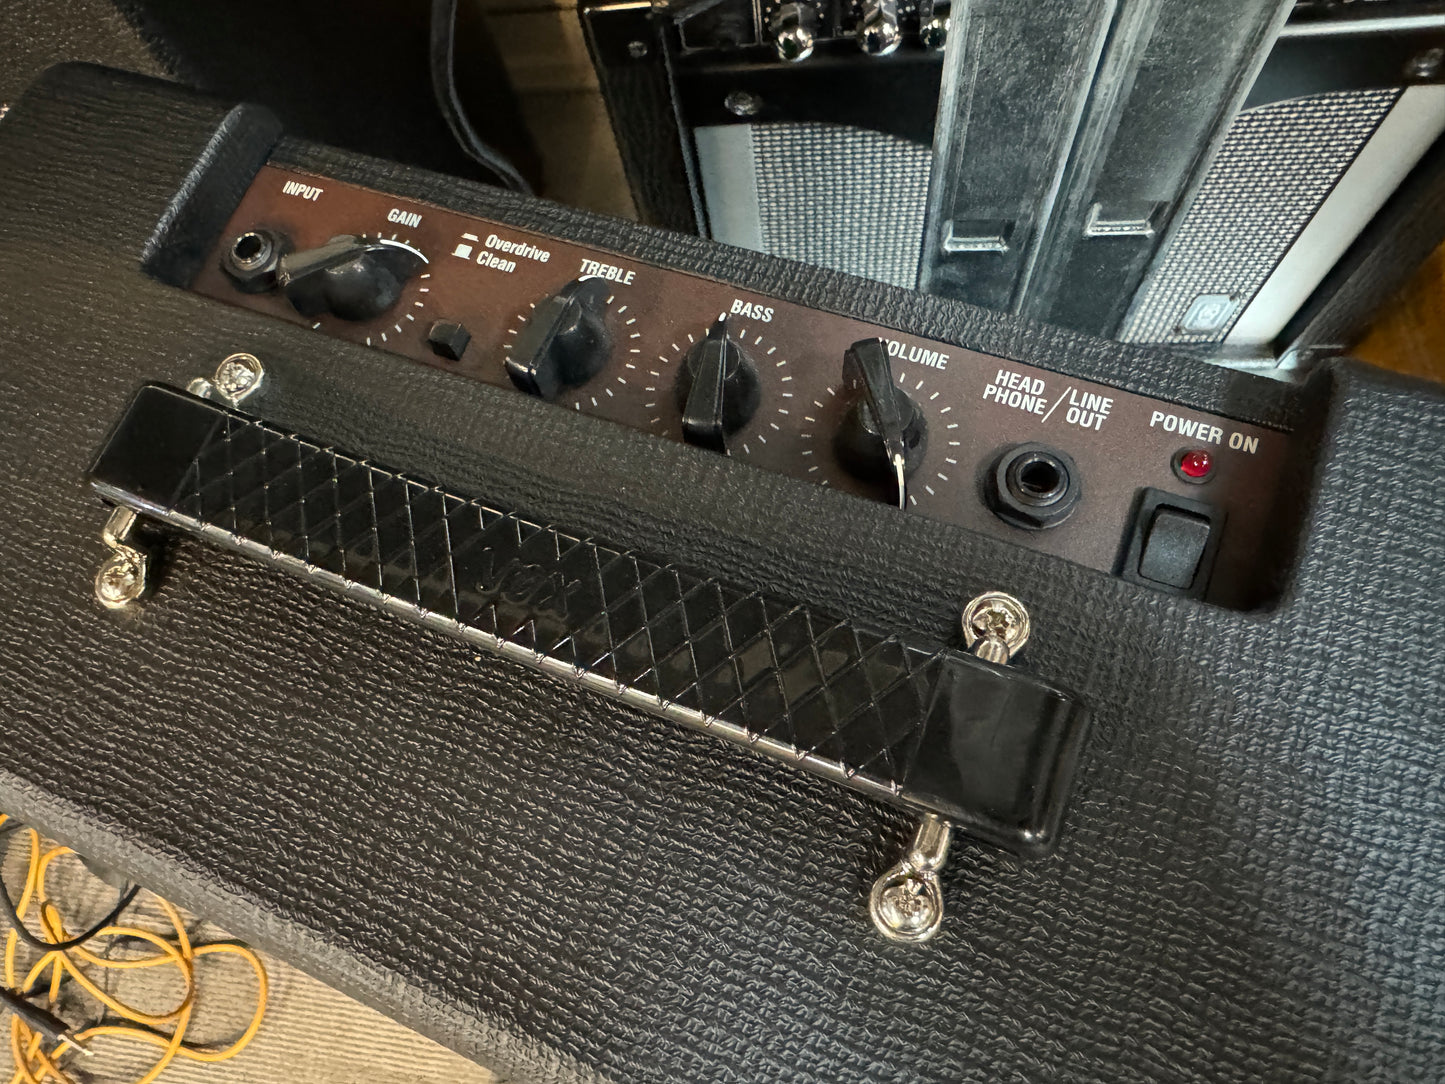 Vox Pathfinder 10w Guitar practice amplifier